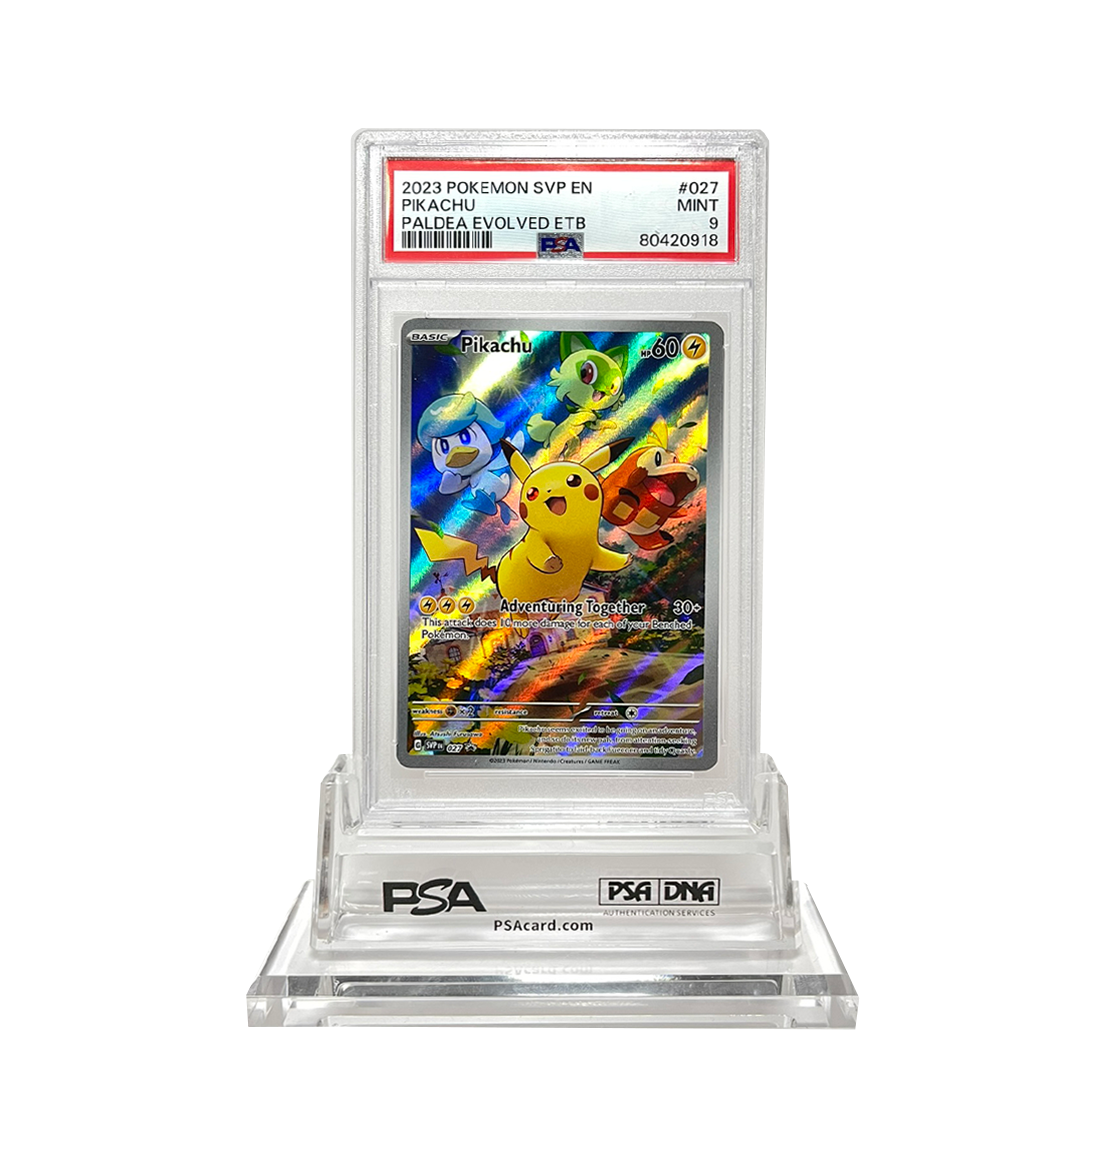 PSA 9 Pikachu SVP #027 Pokemon card